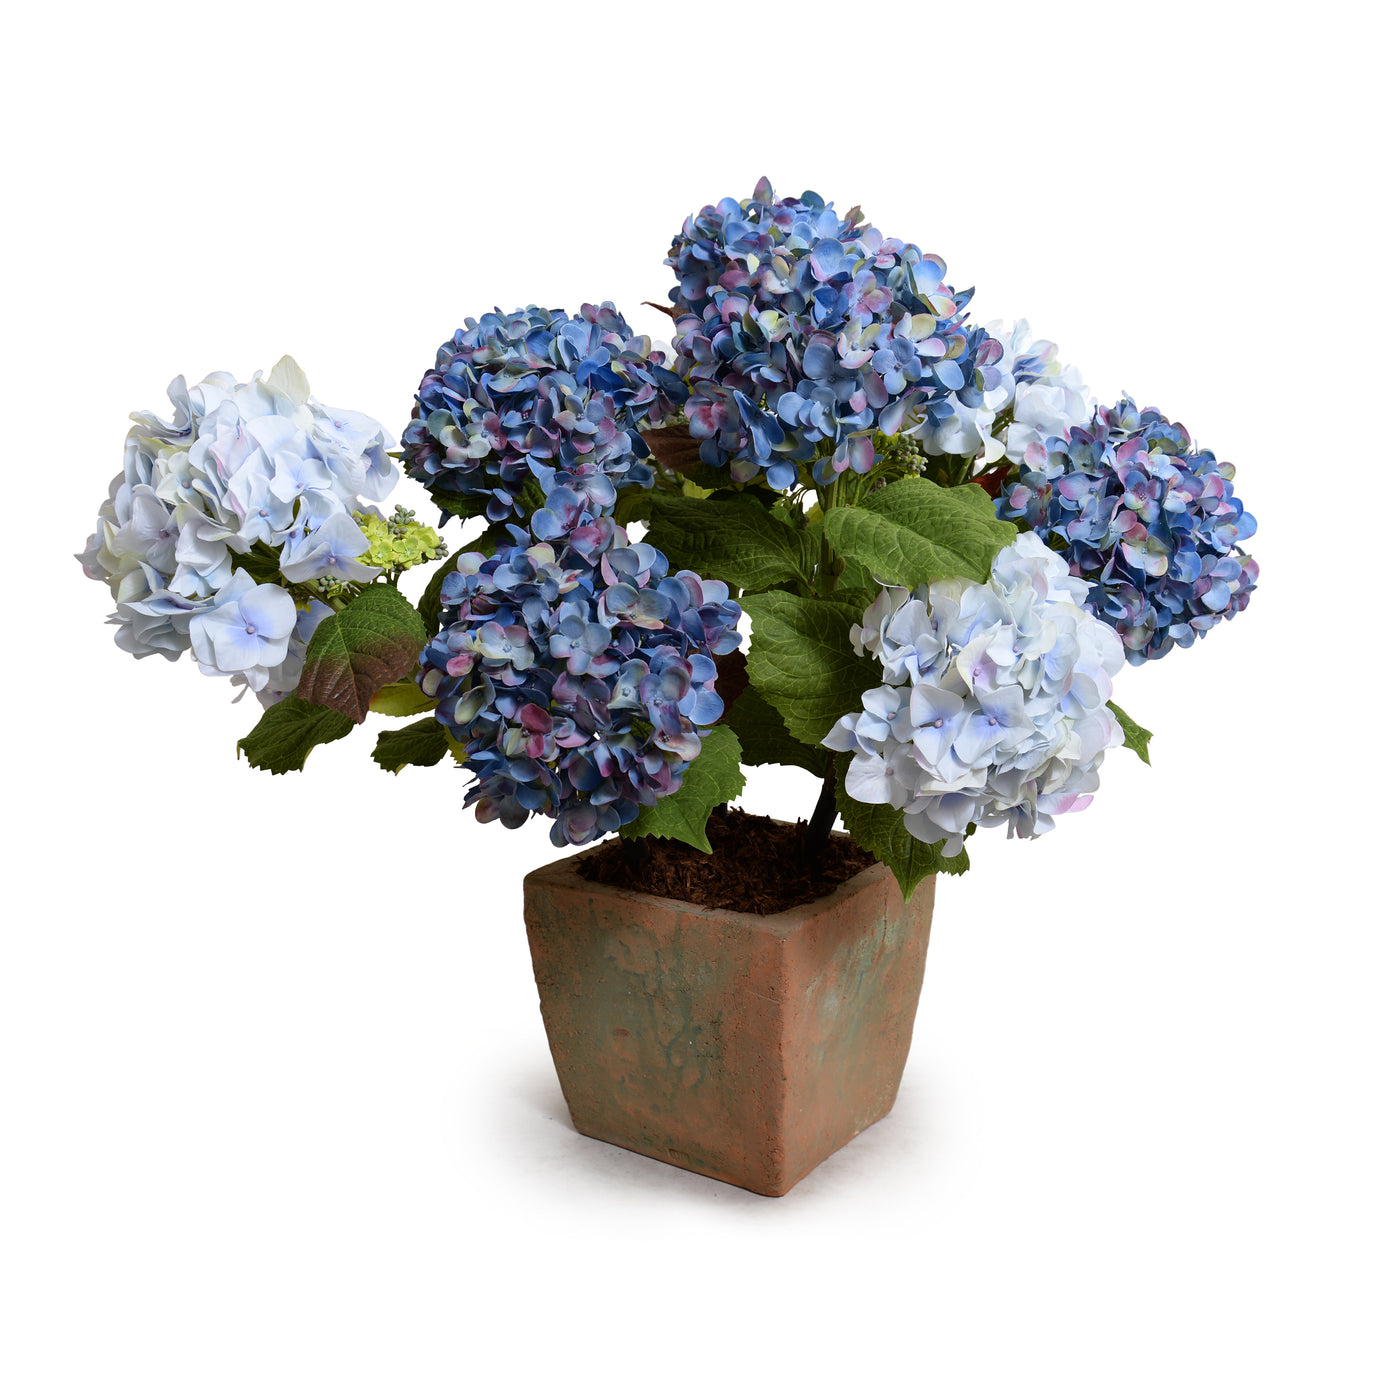 Hydrangea Bush, Large, 29"H - Violet-blue